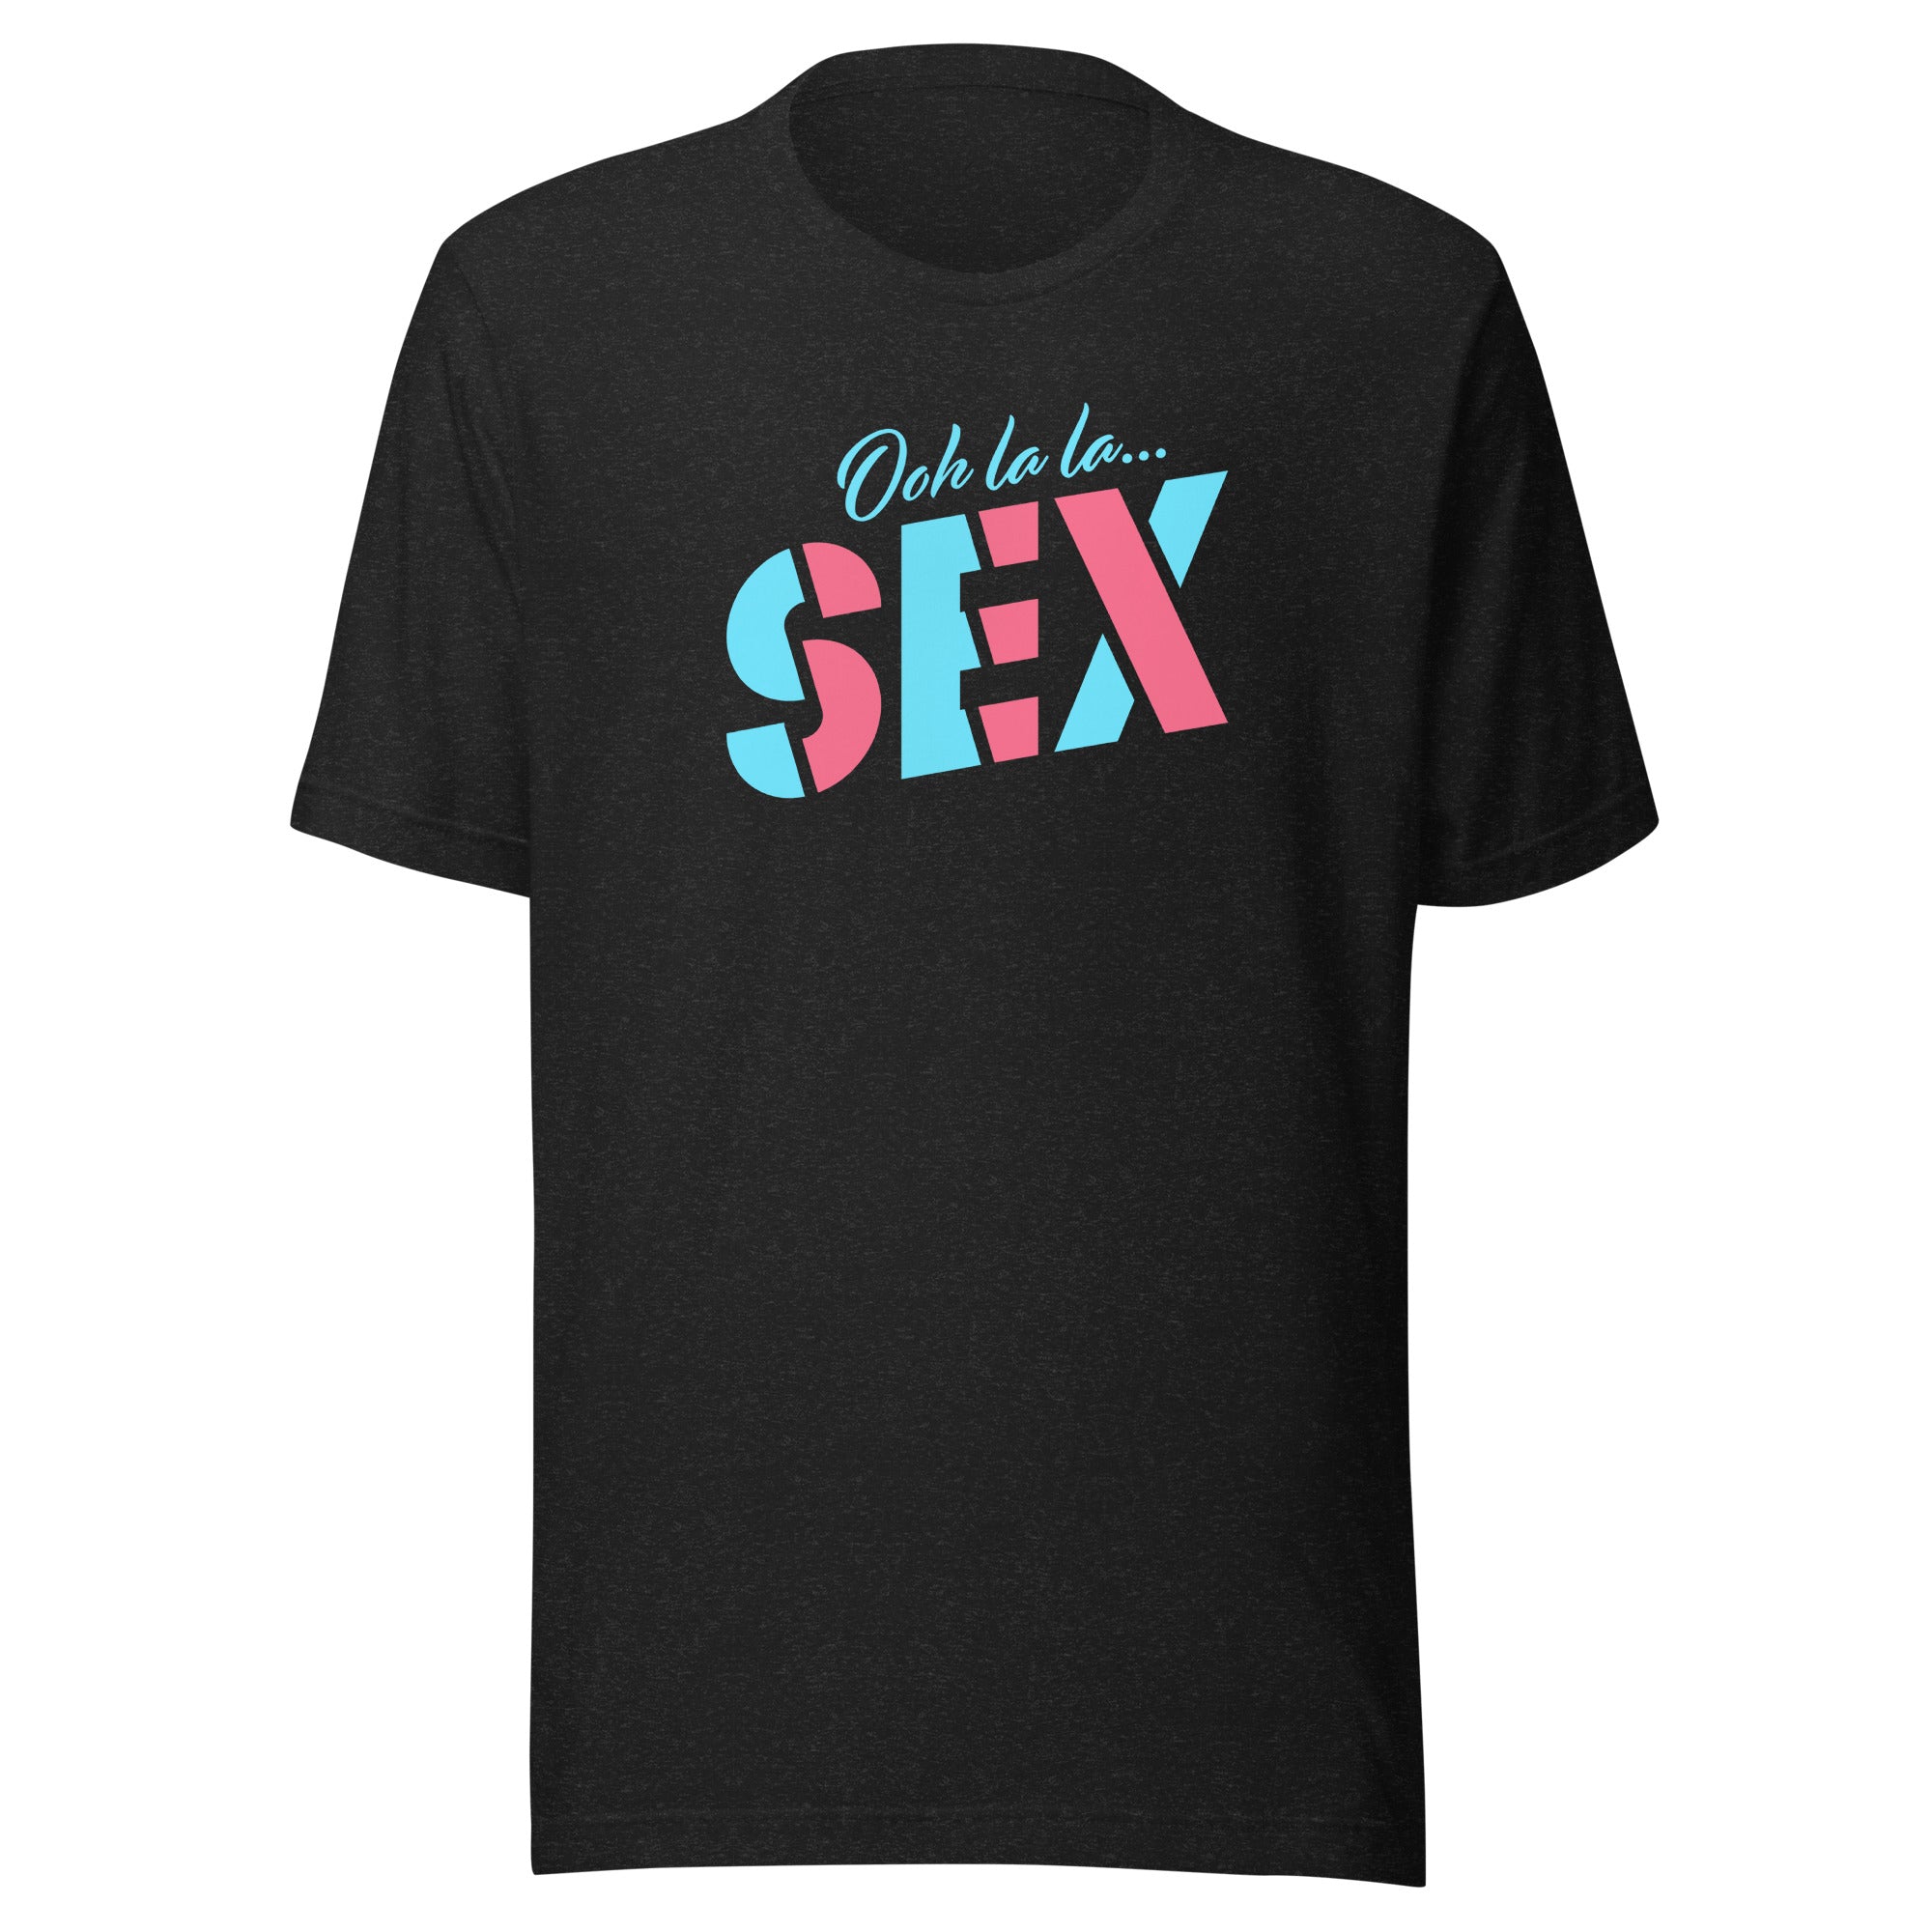 Comedy Bang Bang: Ooh La La...SEX T-shirt